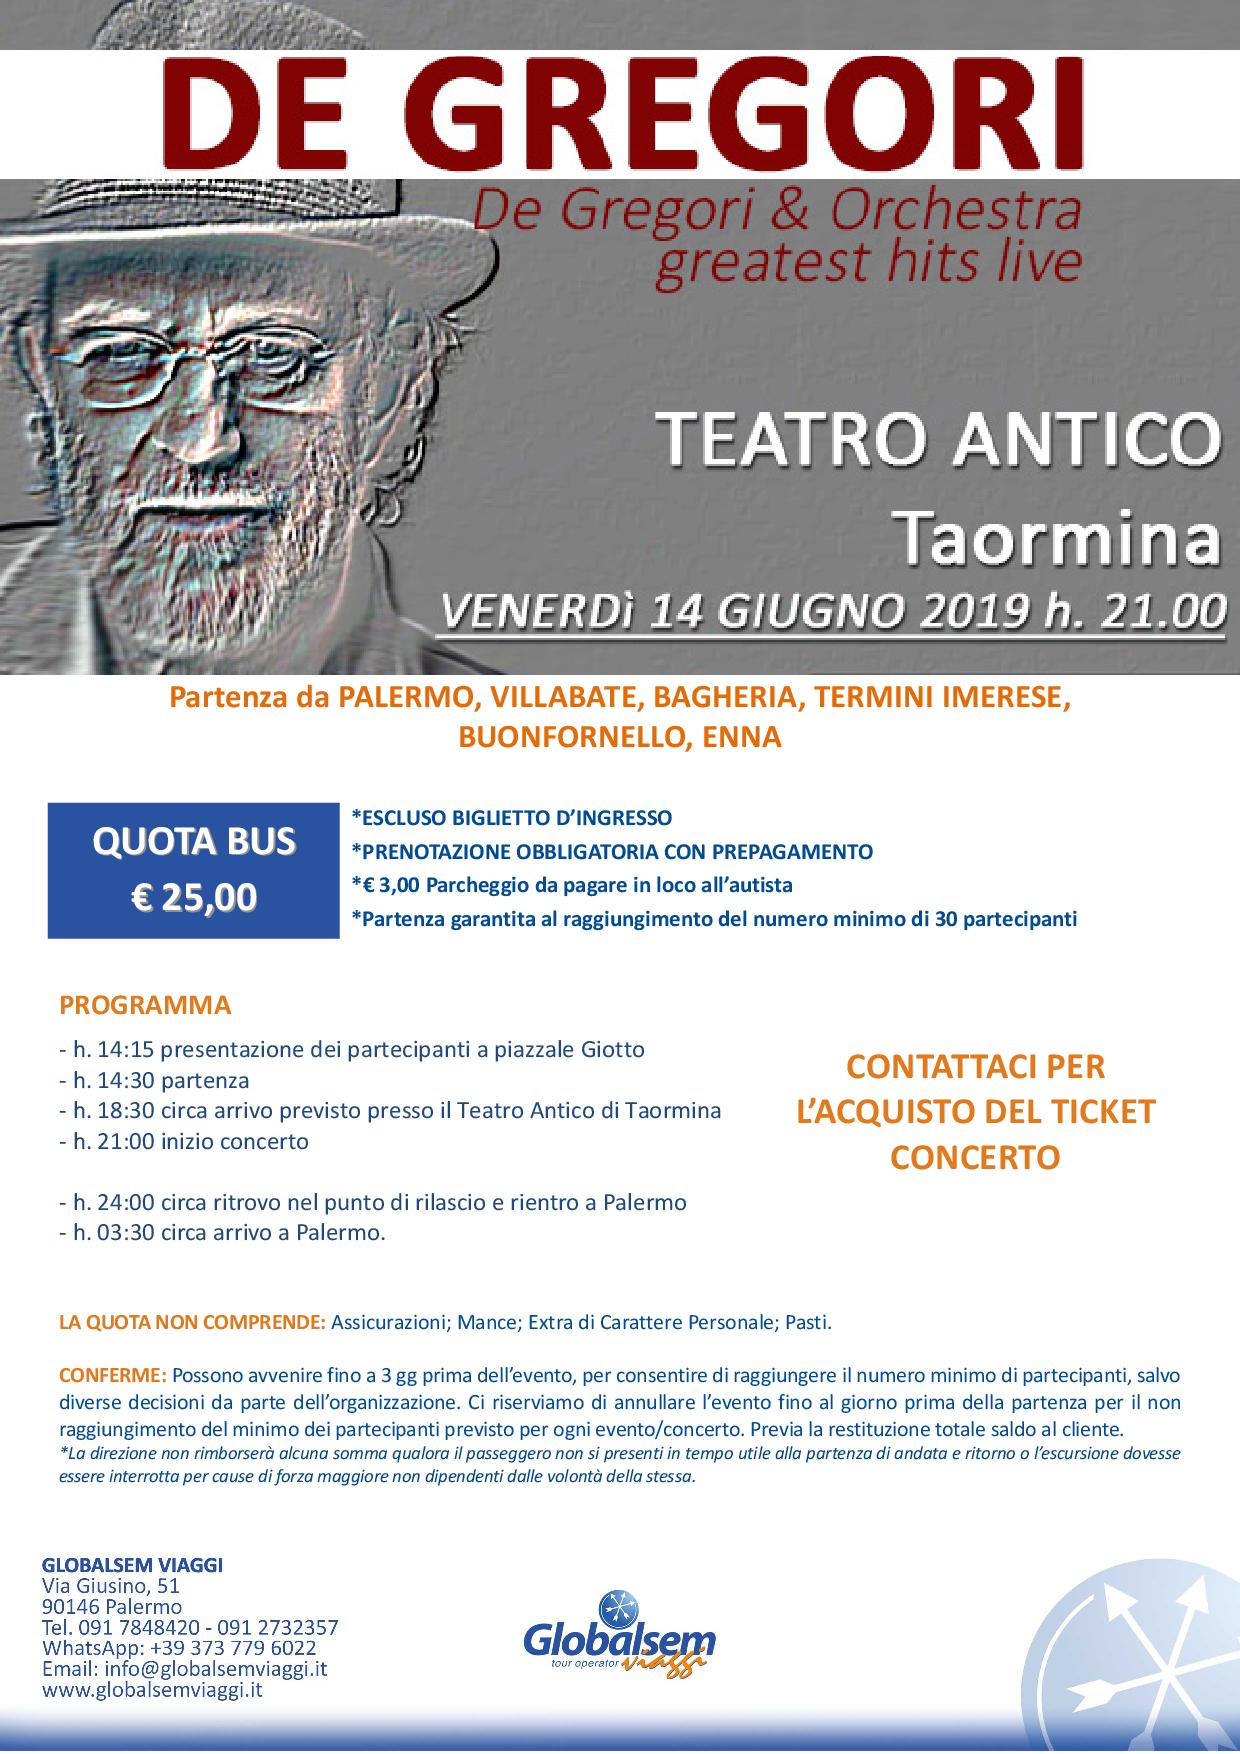 Francesco De Gregori & Orchestra greatest hits live in concerto a Taormina da Palermo, Villabate, Bagheria, Casteldaccia, Termini Imerese, Buonfornello, Enna